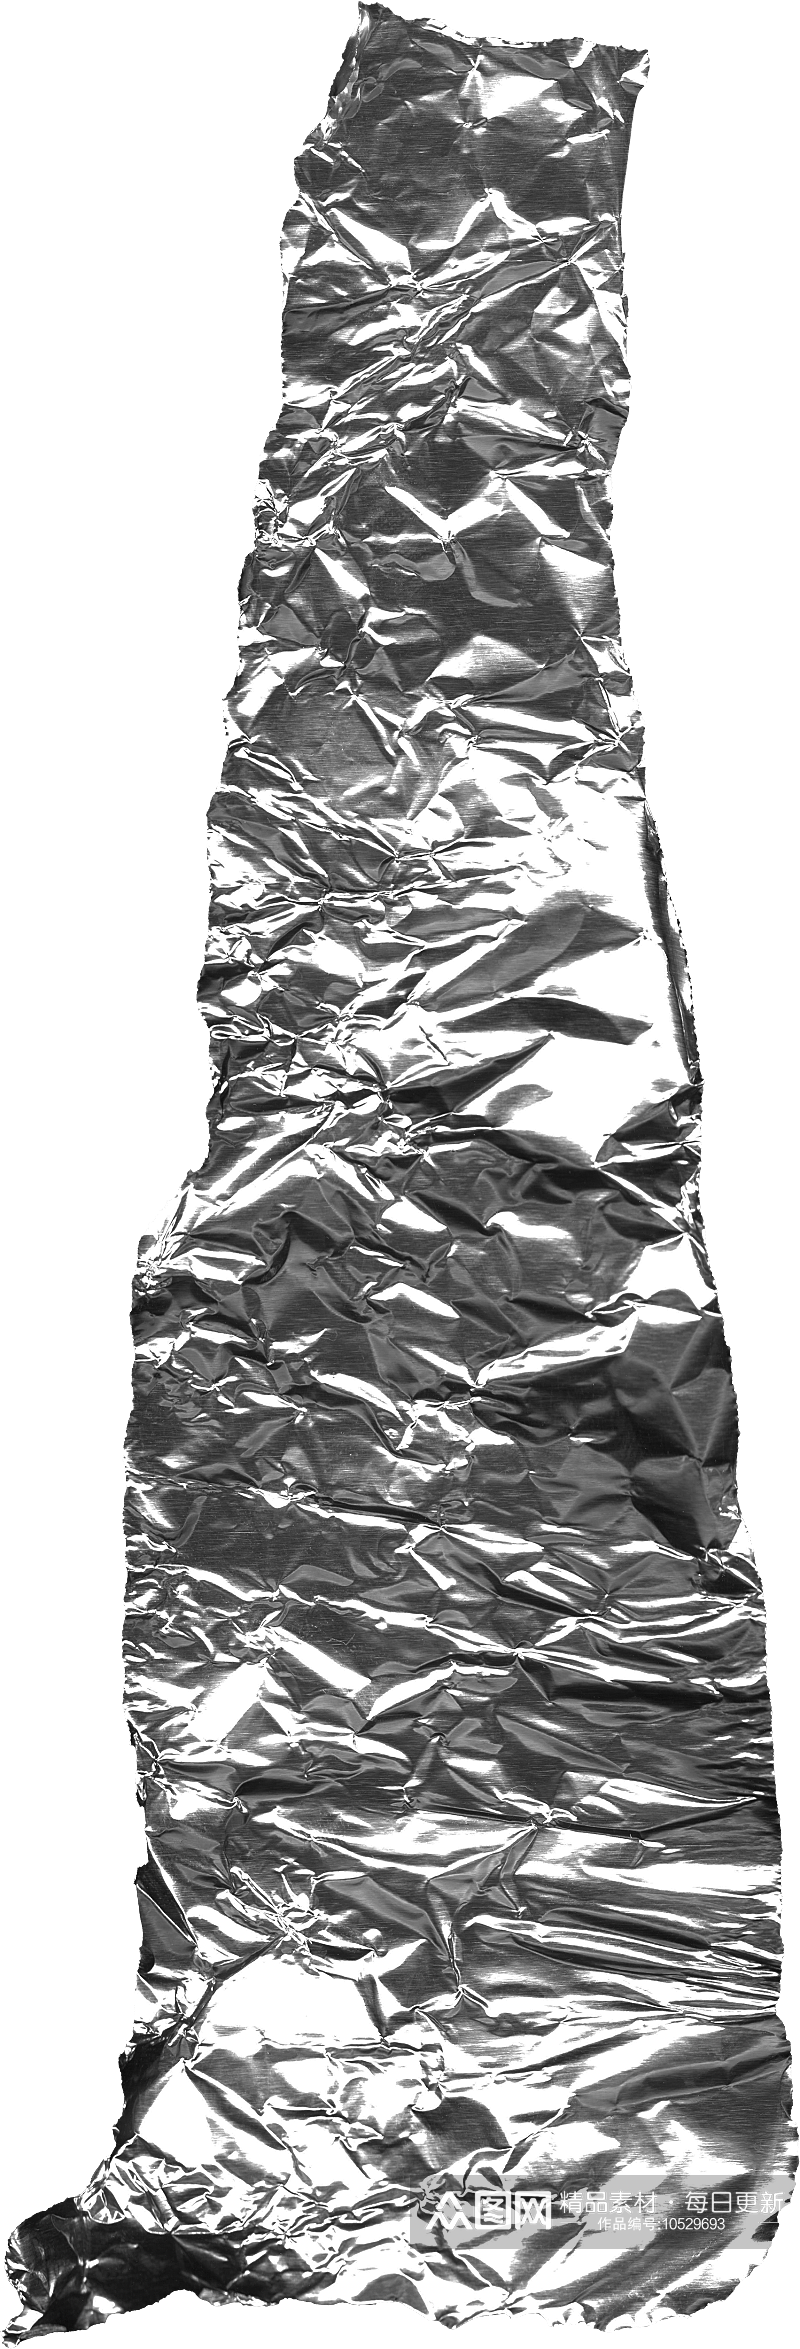 银色科幻金属铝箔褶皱肌理海报背景底纹素材素材